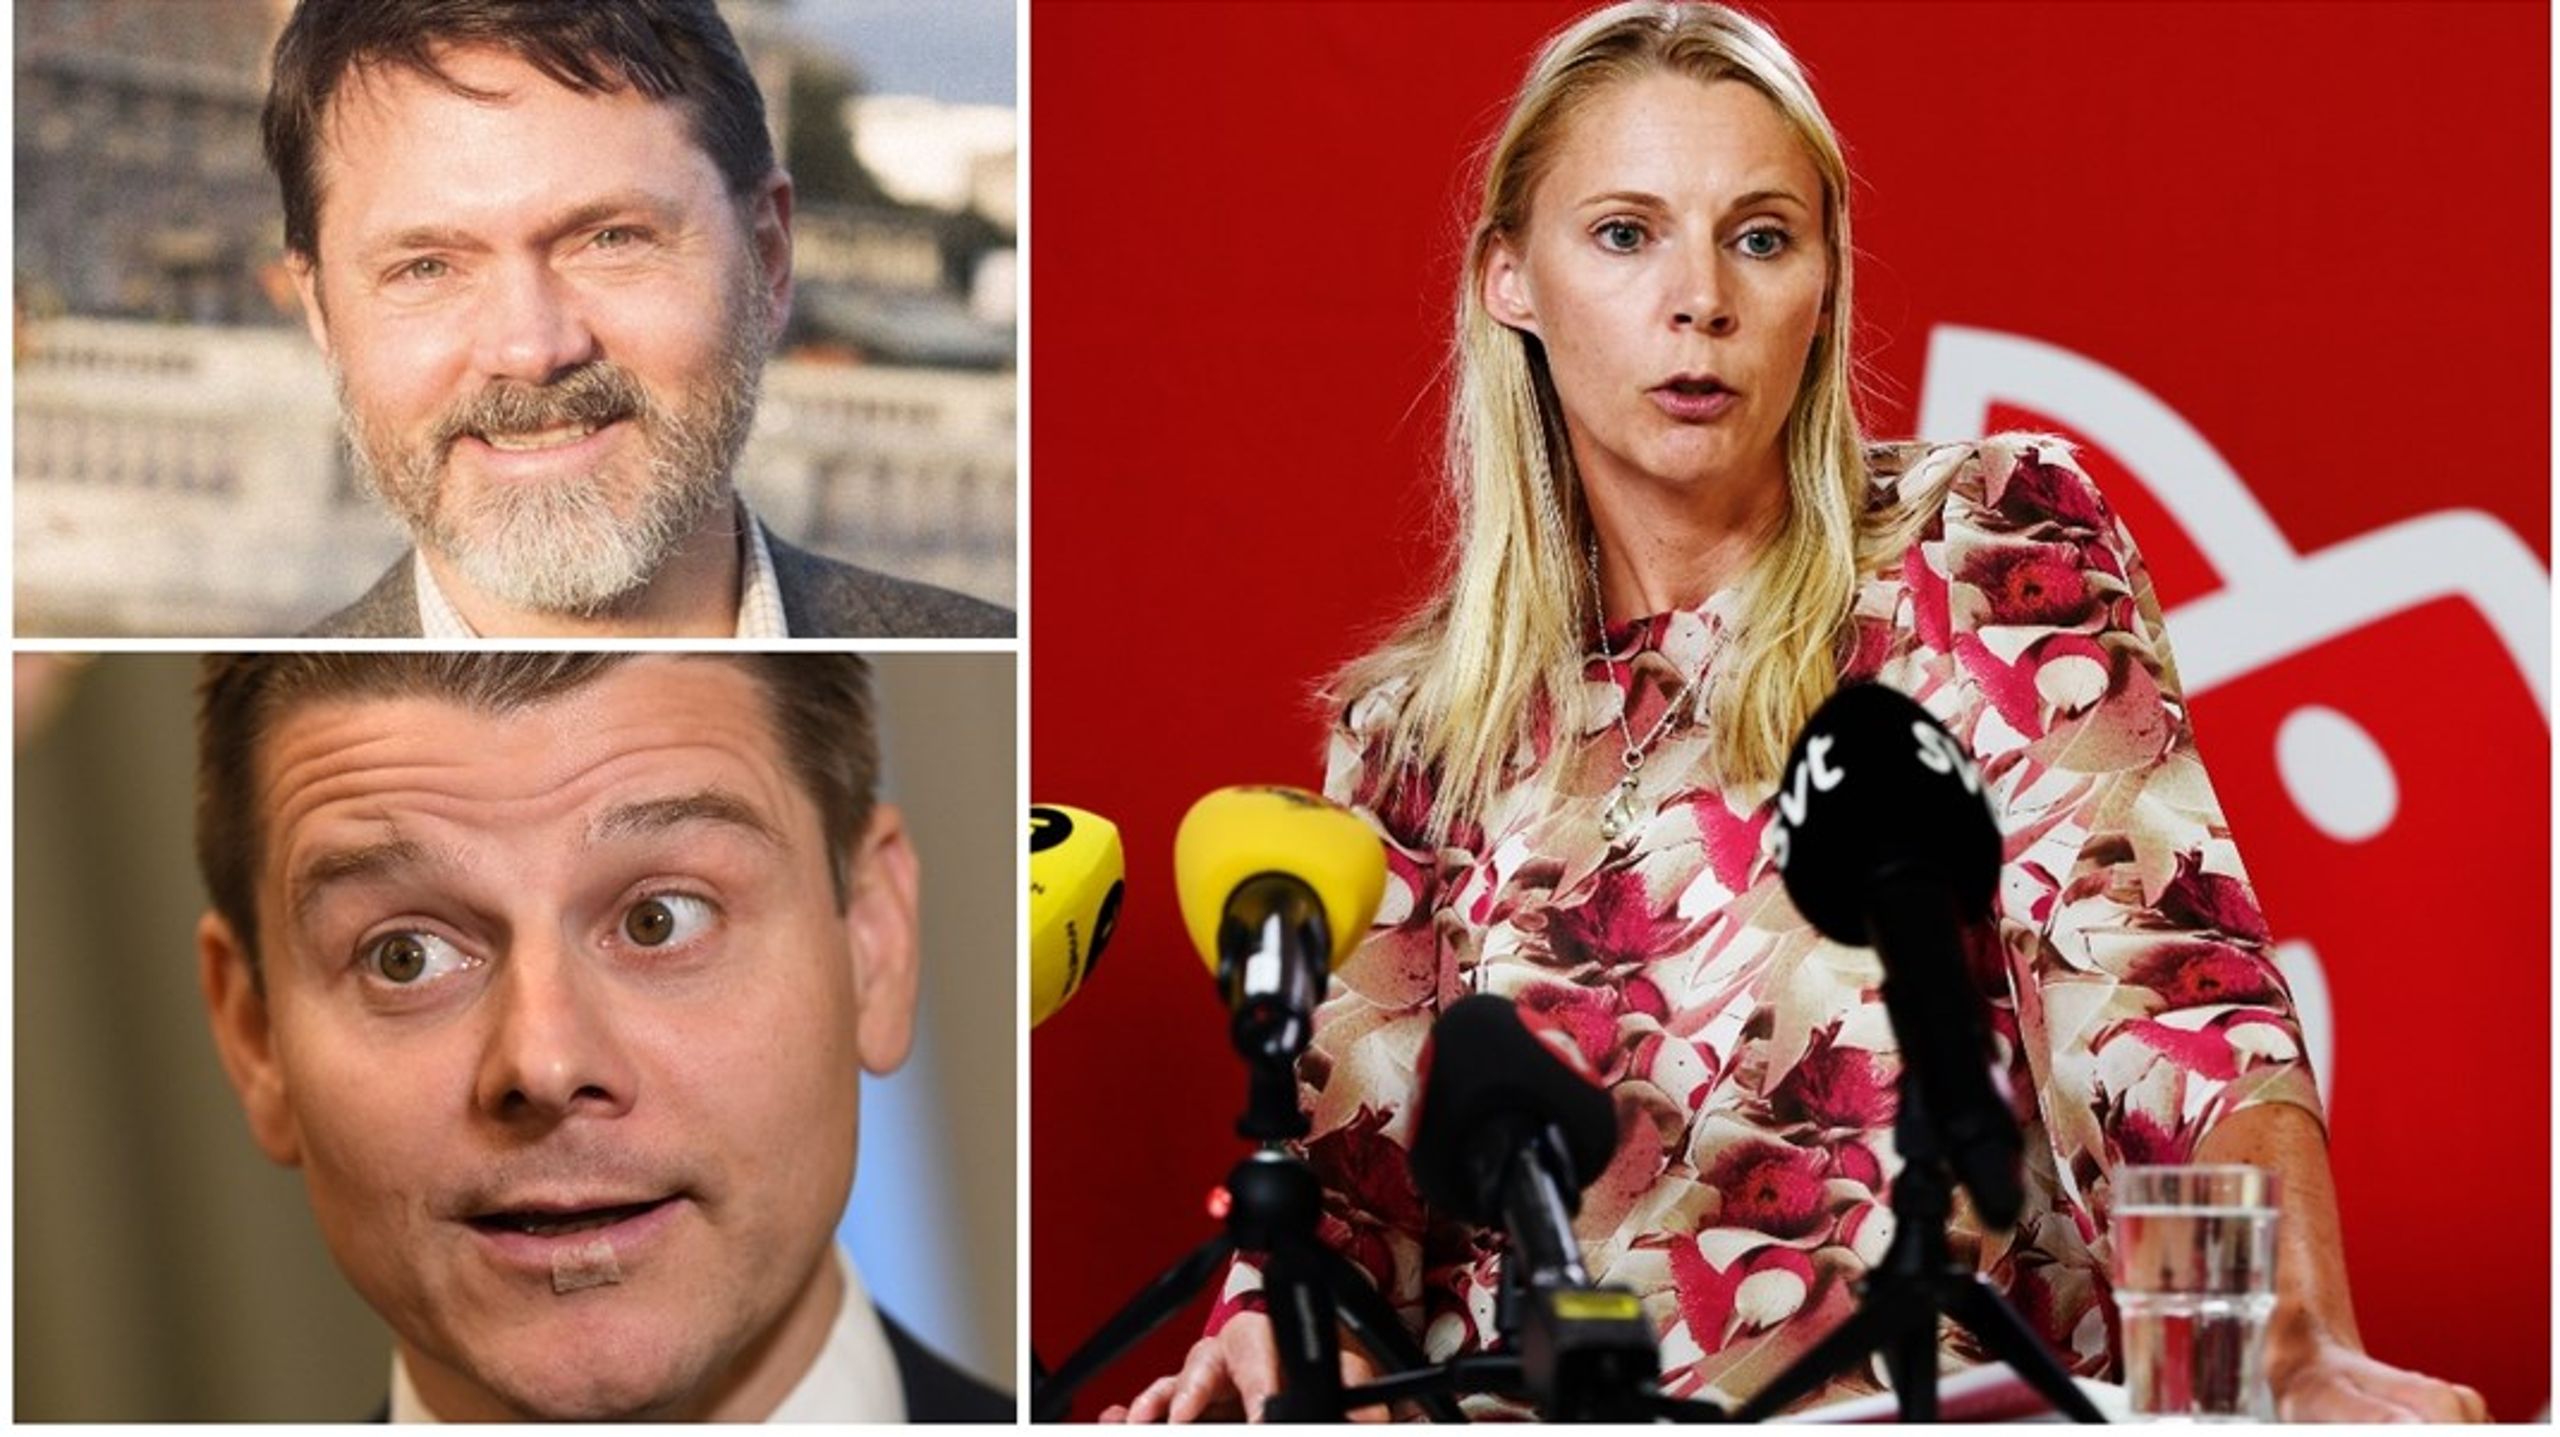 Markus Kallifatides, Niklas Karlsson och Åsa Westlund är alla nöjda med kongressens beslut. Trots att de hade olika ingångar i det.